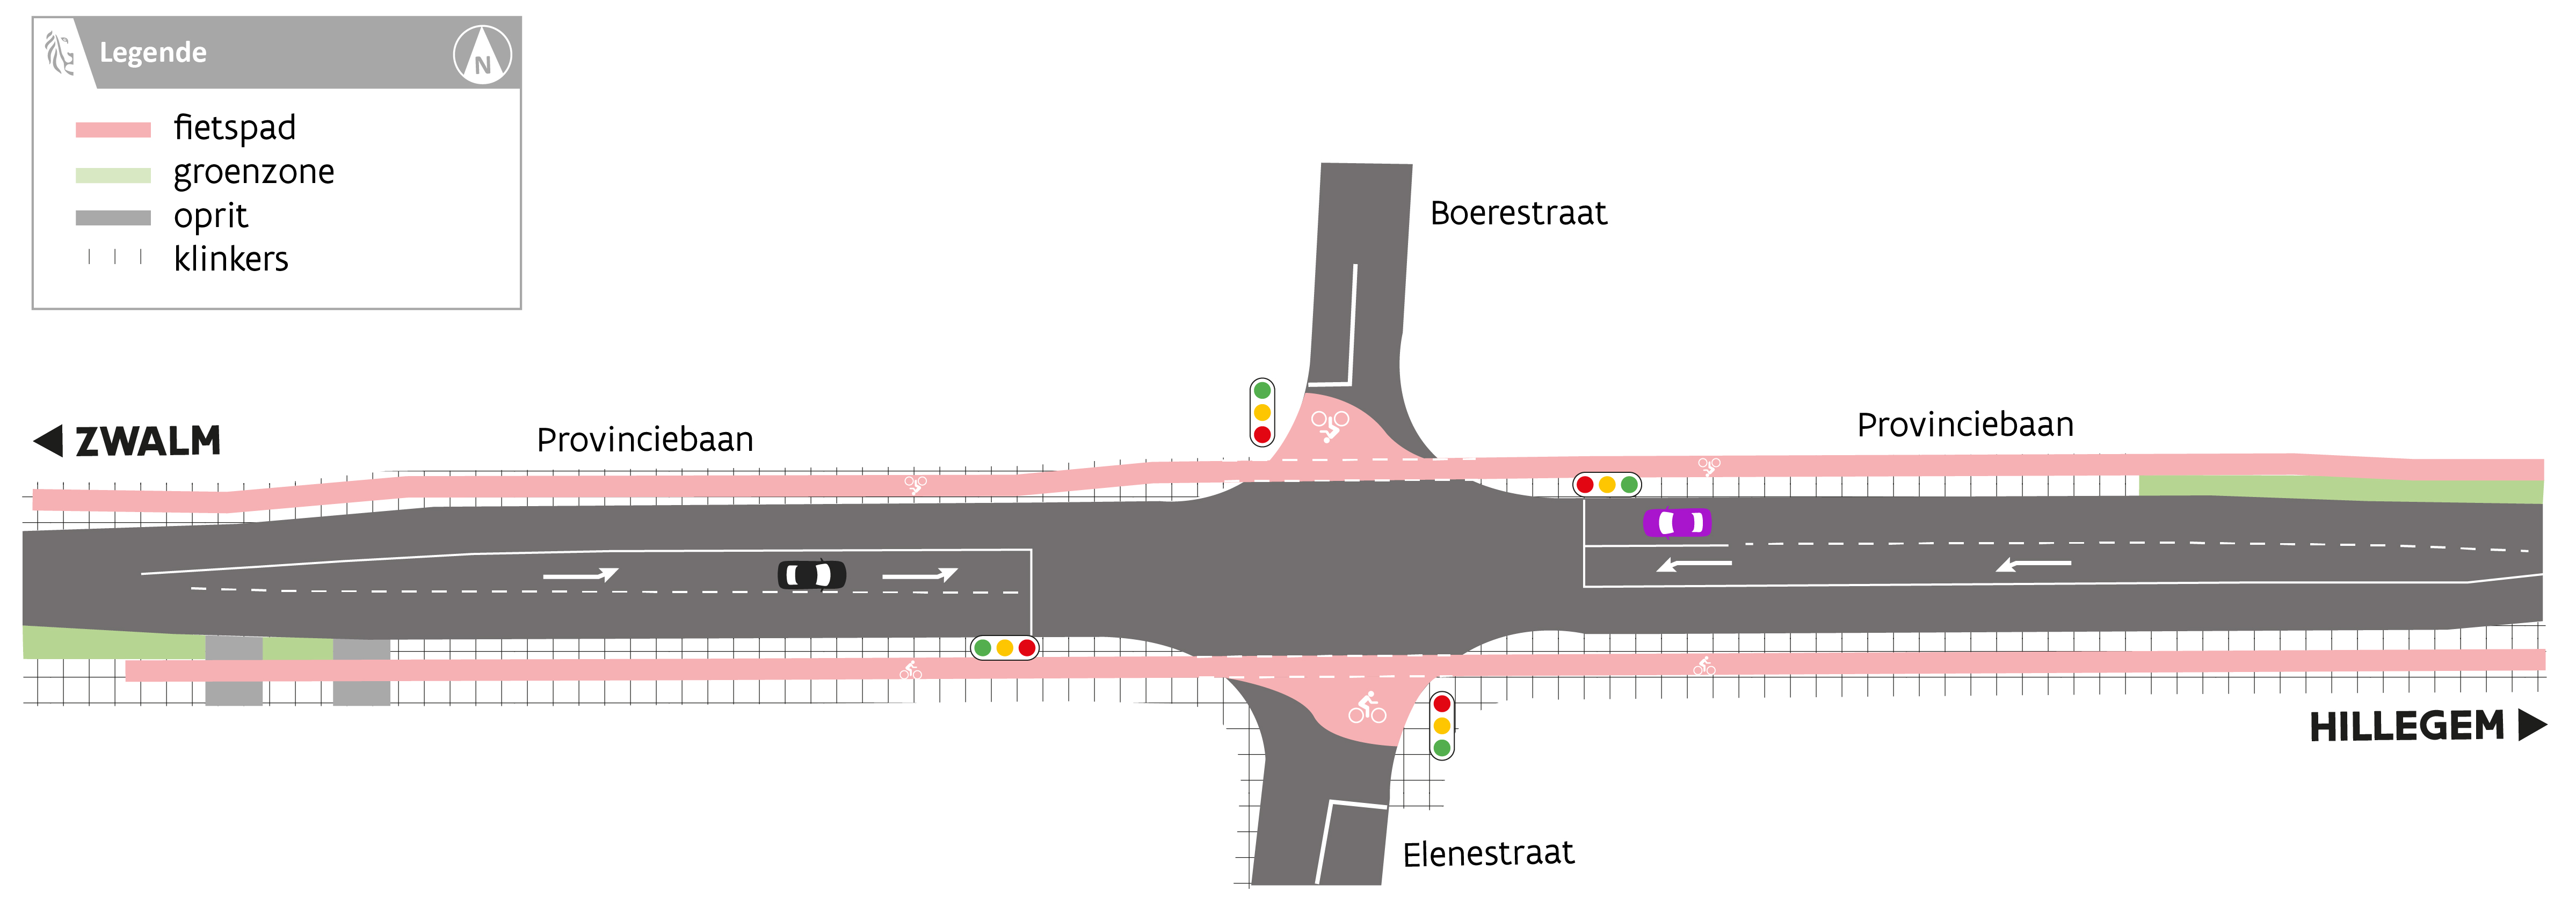 Vereenvoudigde voorstelling van ontwerp kruispunt Elenestraat - Boerestraat